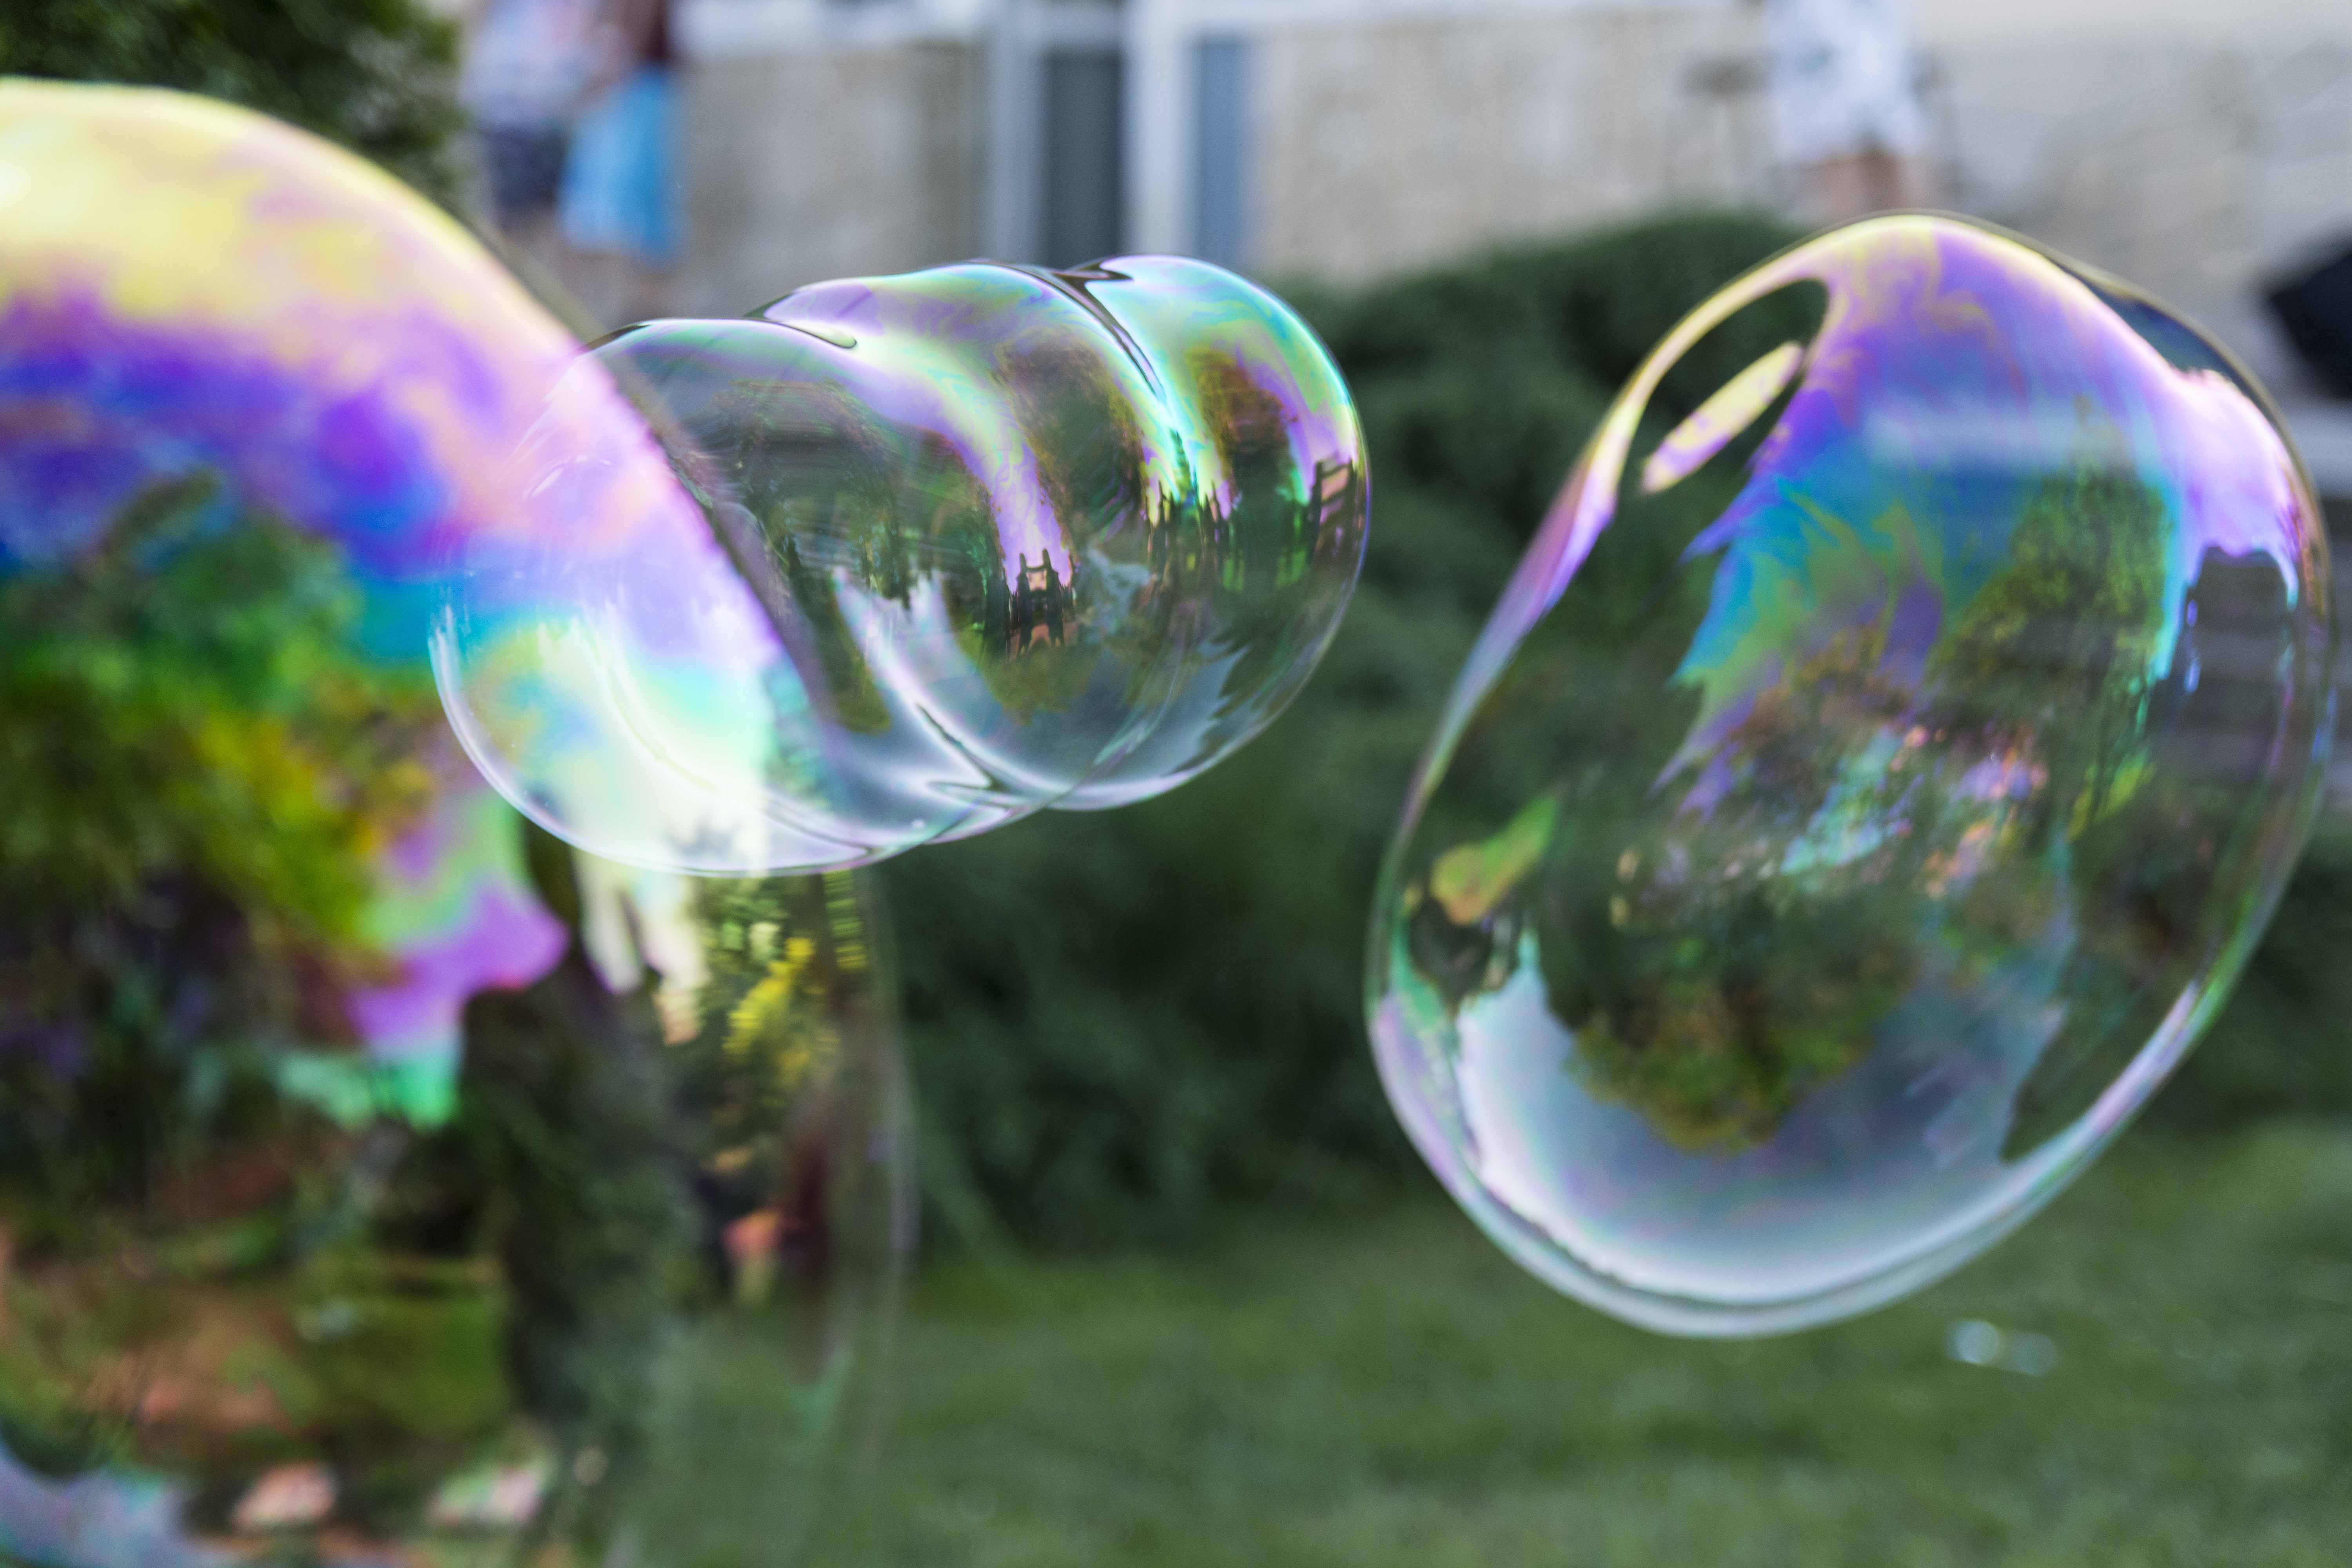  Voici la recette parfaite pour créer des bulles géantes ! © Marta, Adobe Stock